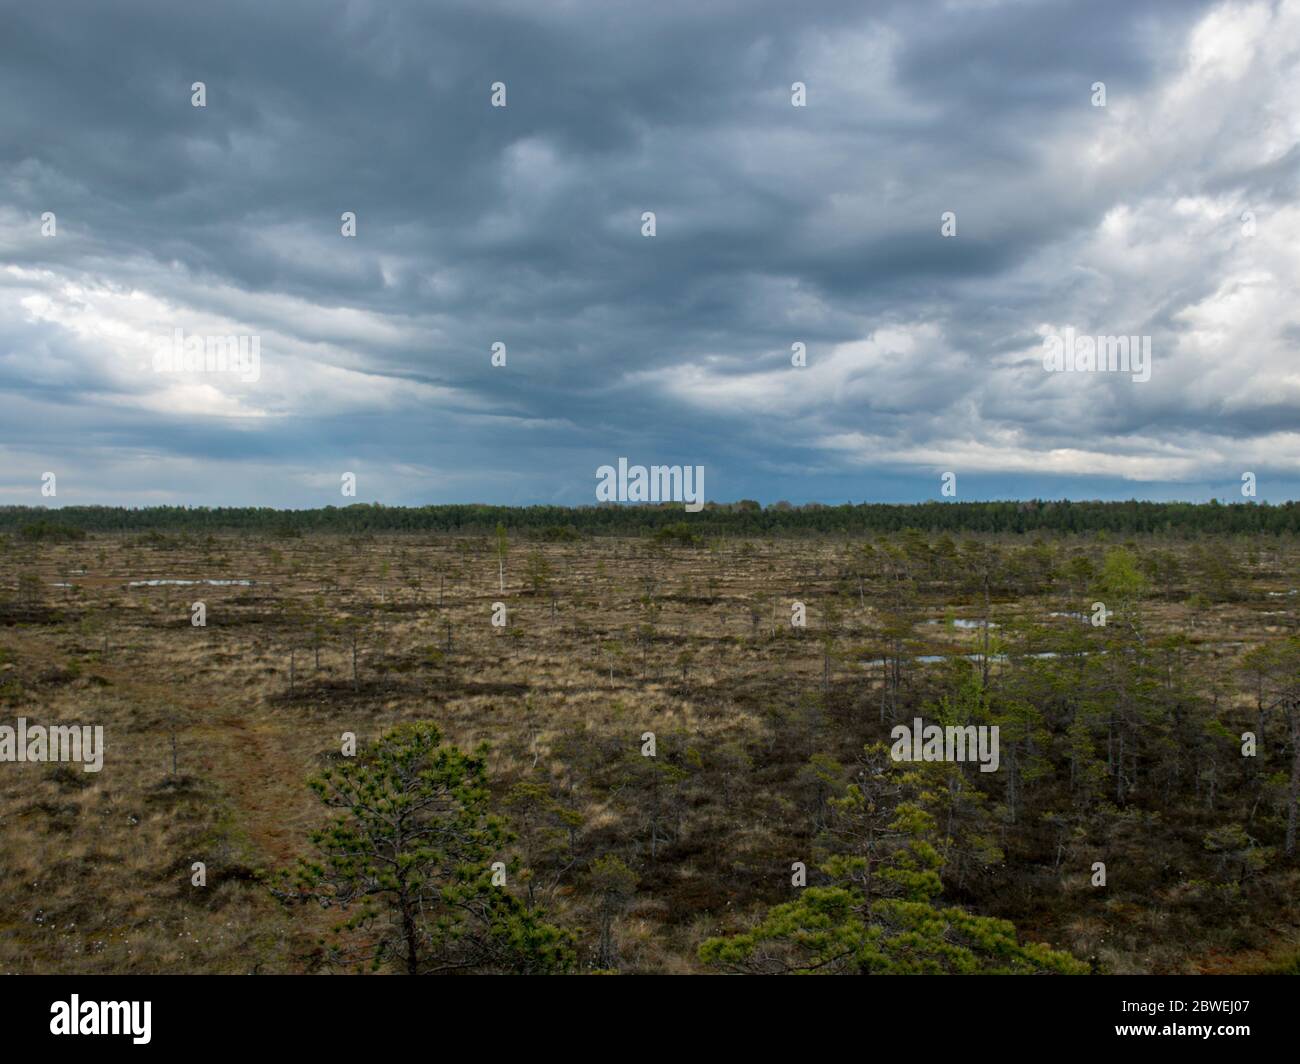 Nice landscape with old peat bog and swamp vegetation, Niedraju Pilka bog, Latvia Stock Photo